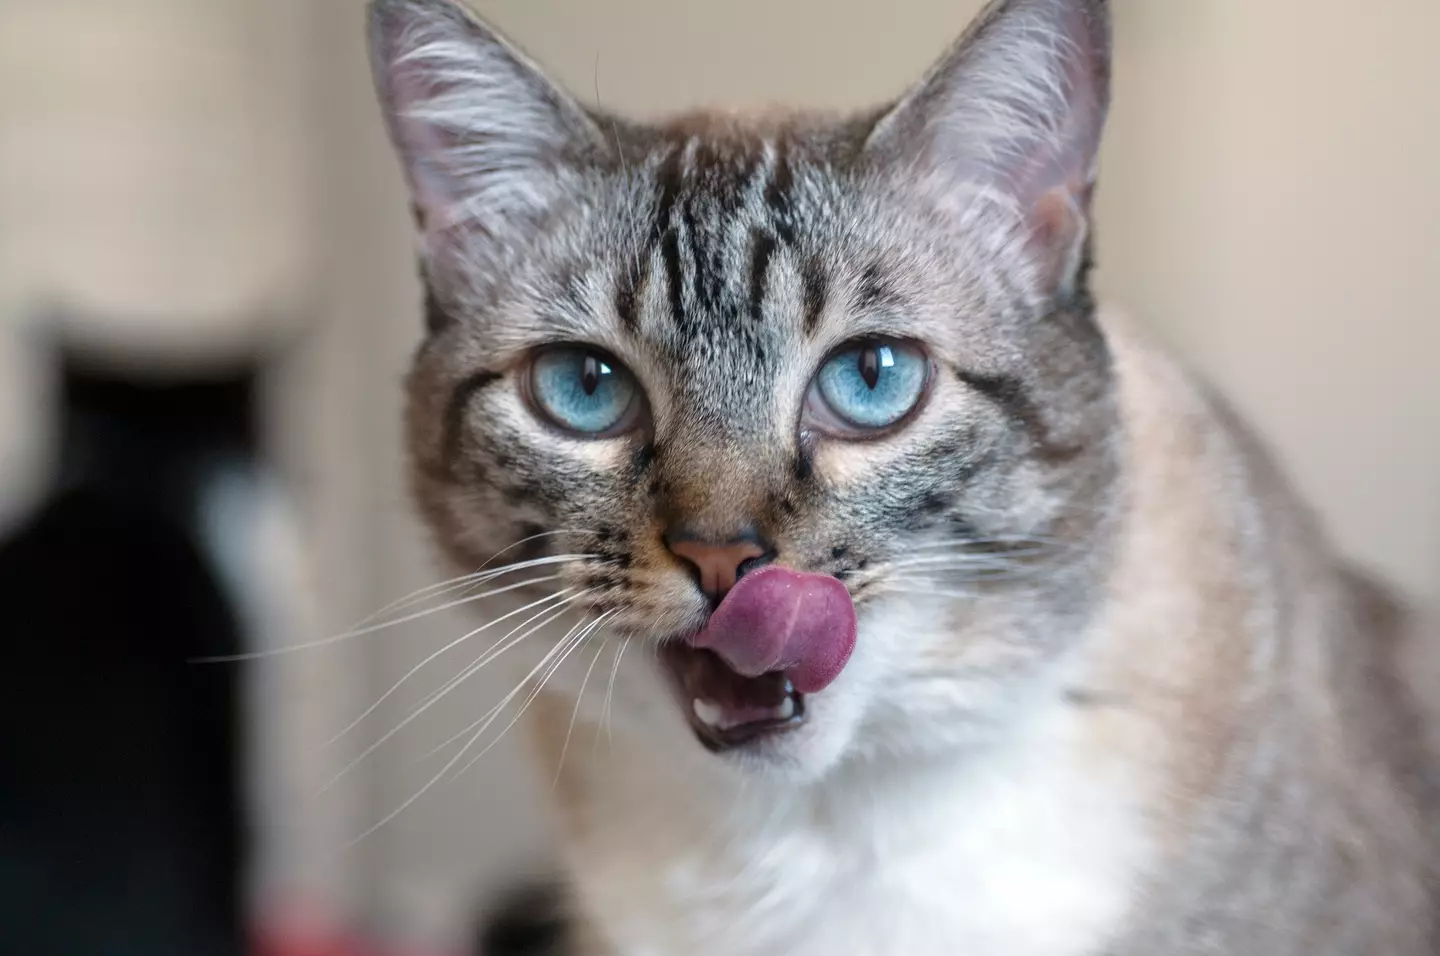 Cat tongues are pretty impressive.